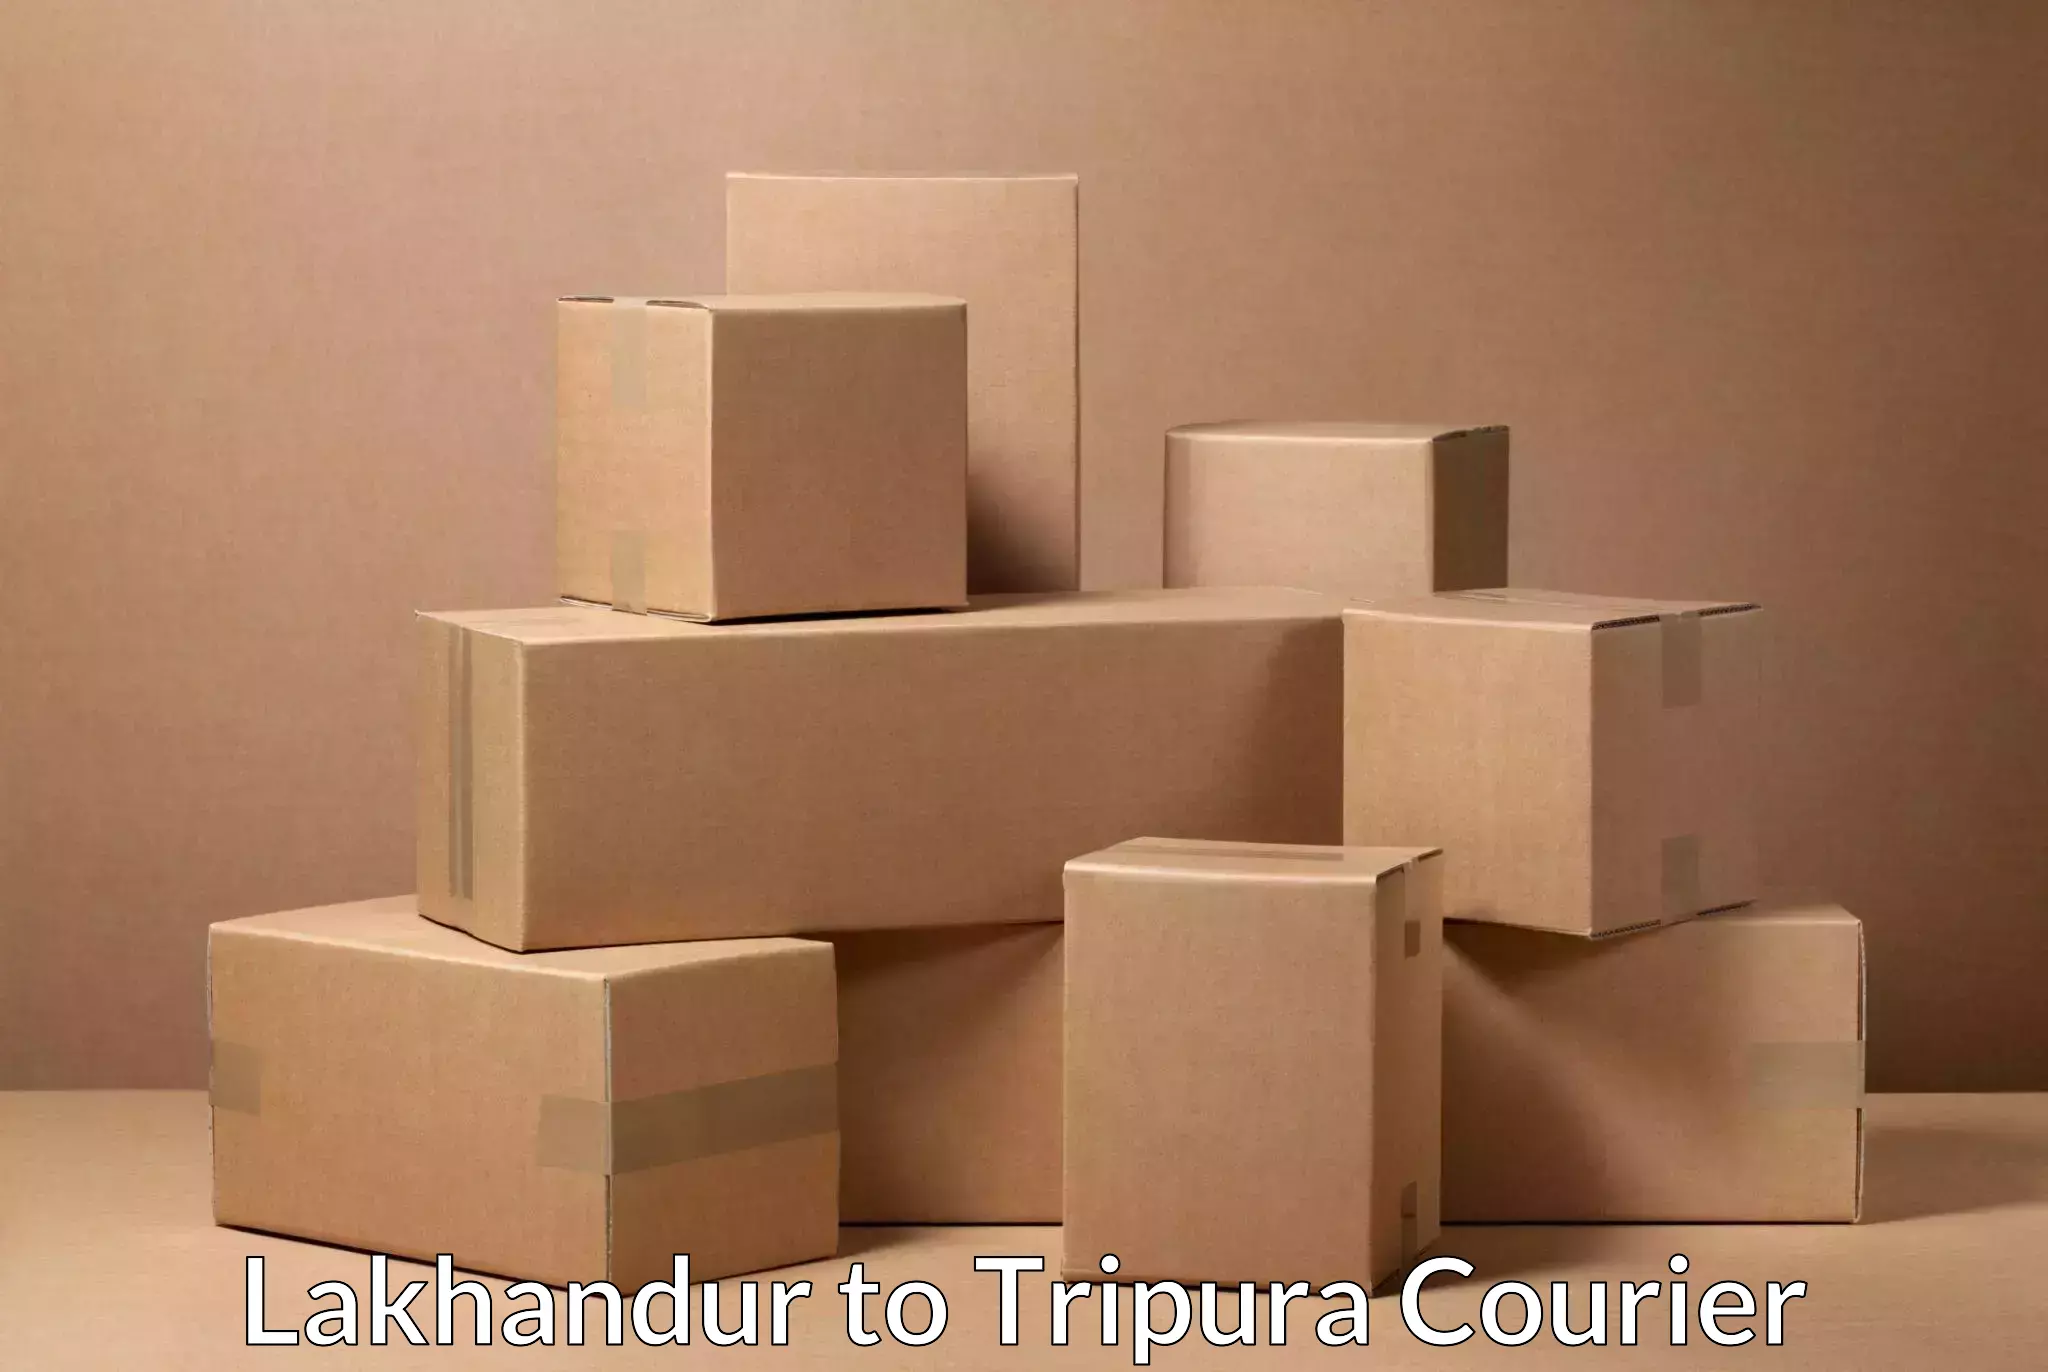 Reliable parcel services Lakhandur to Amarpur